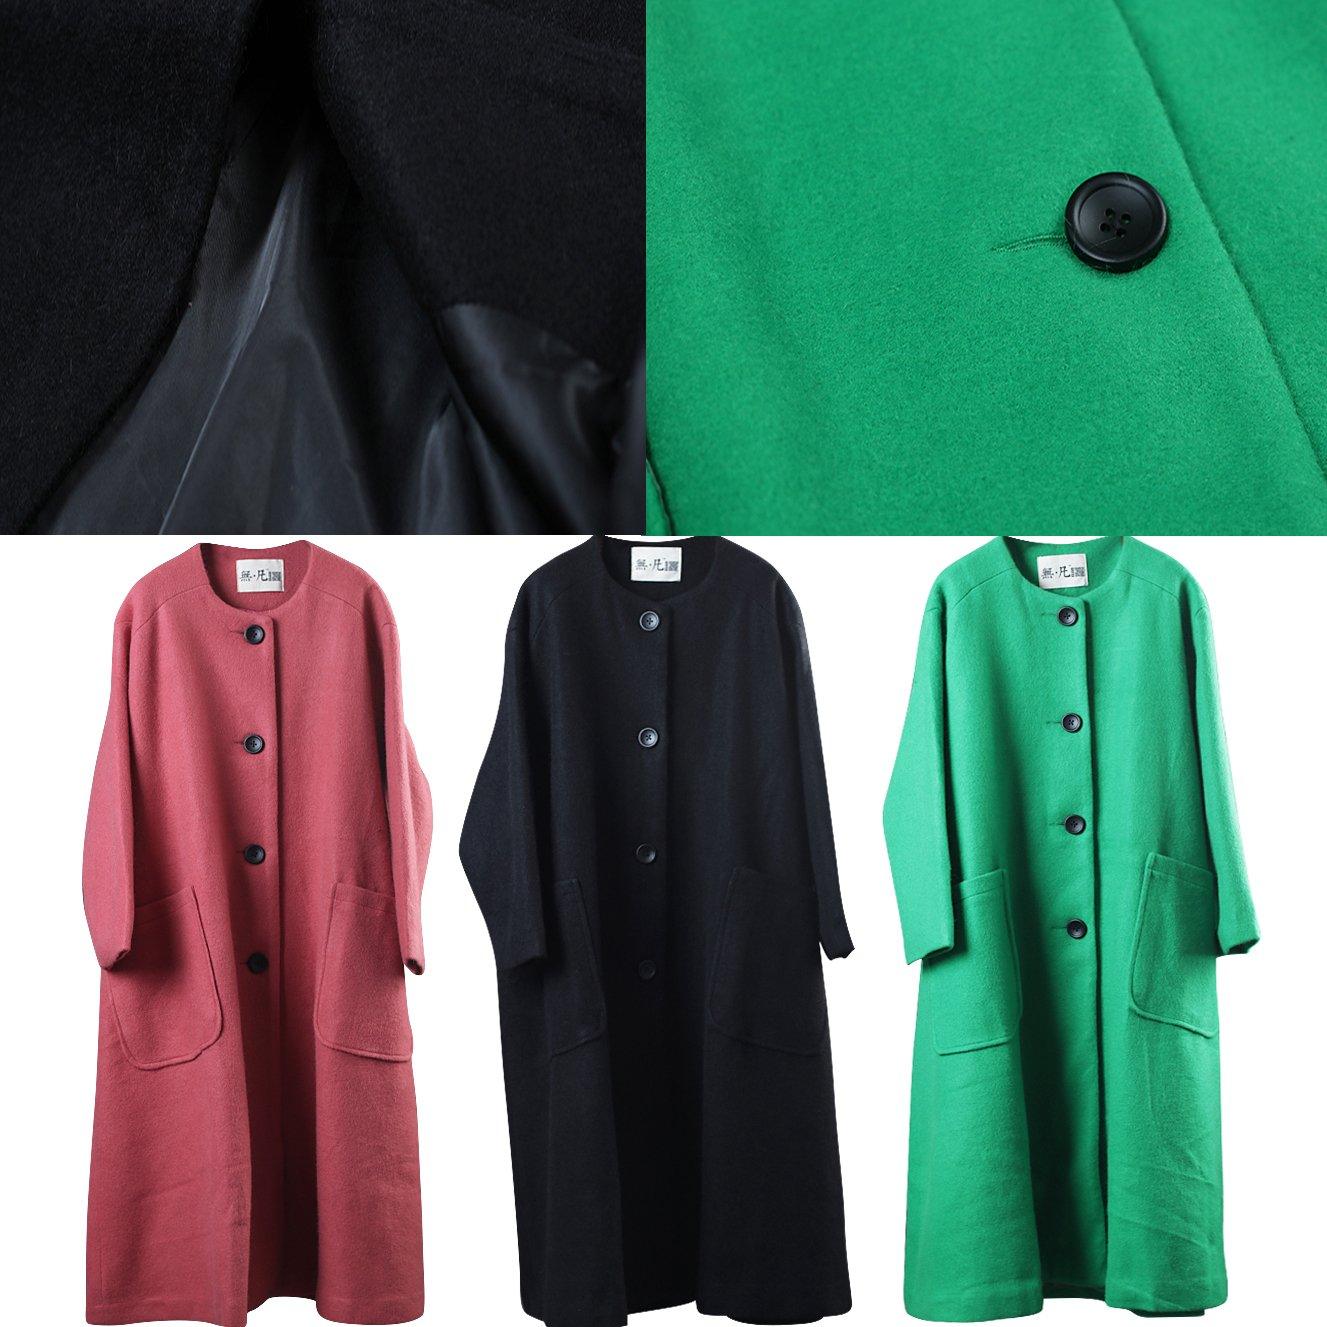 Fine red Wool Coat plus size clothing o neck outwear Fashion pockets large hem long coat - Omychic